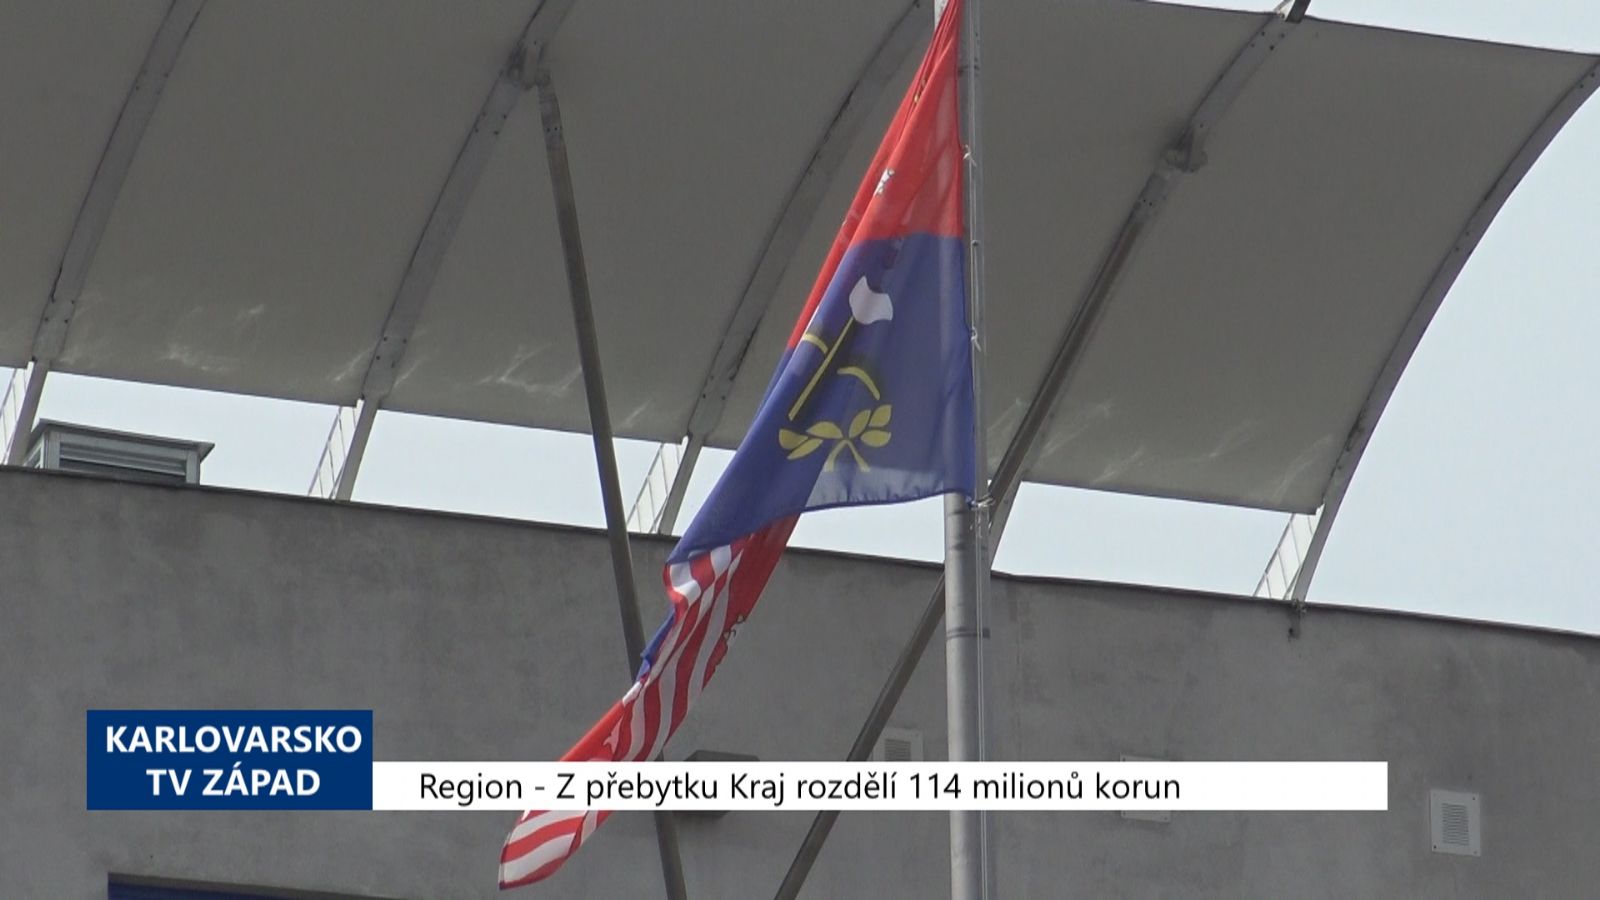 Region: Z přebytku Kraj rozdělí 114 milionů korun (TV Západ)